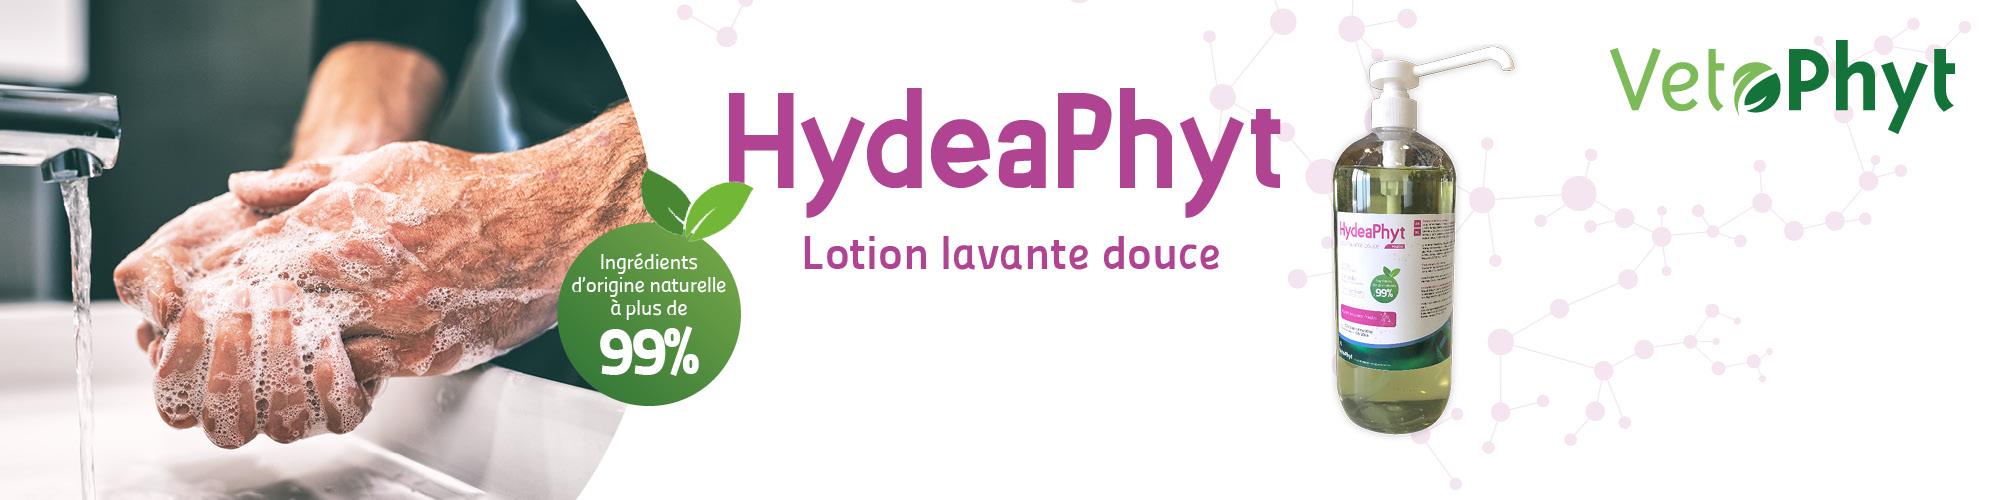 Hydeaphyt